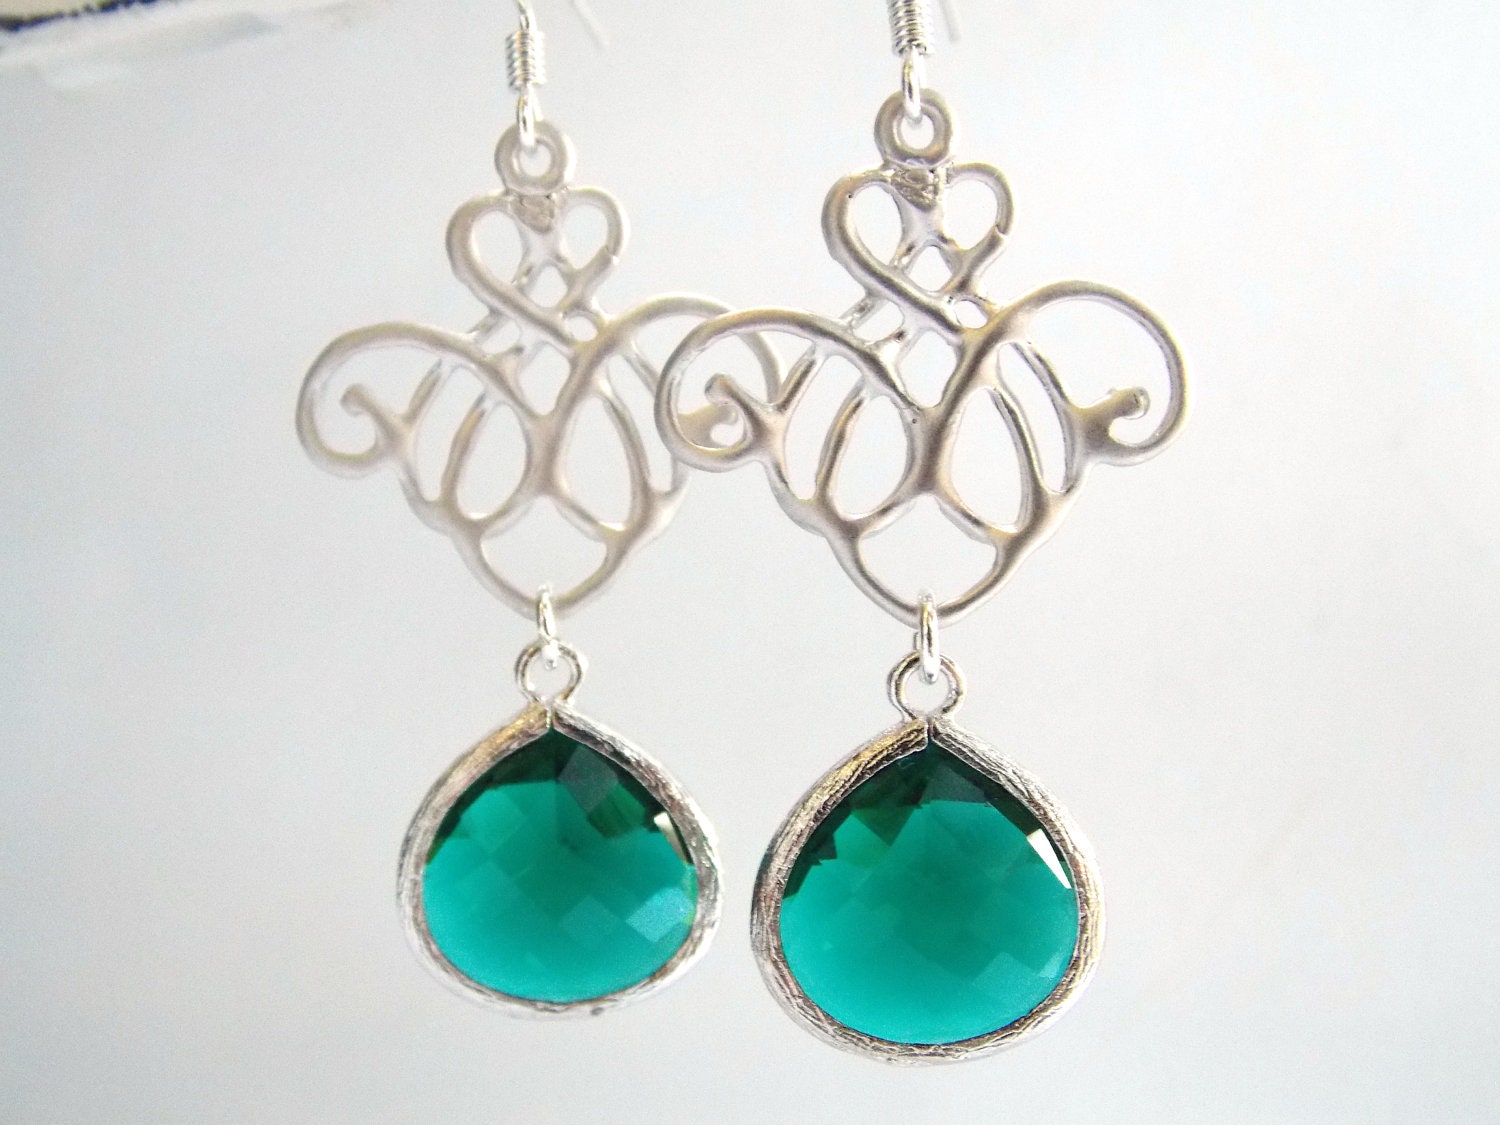 Emerald Earrings Green Earrings Glass Earrings Silver | Etsy